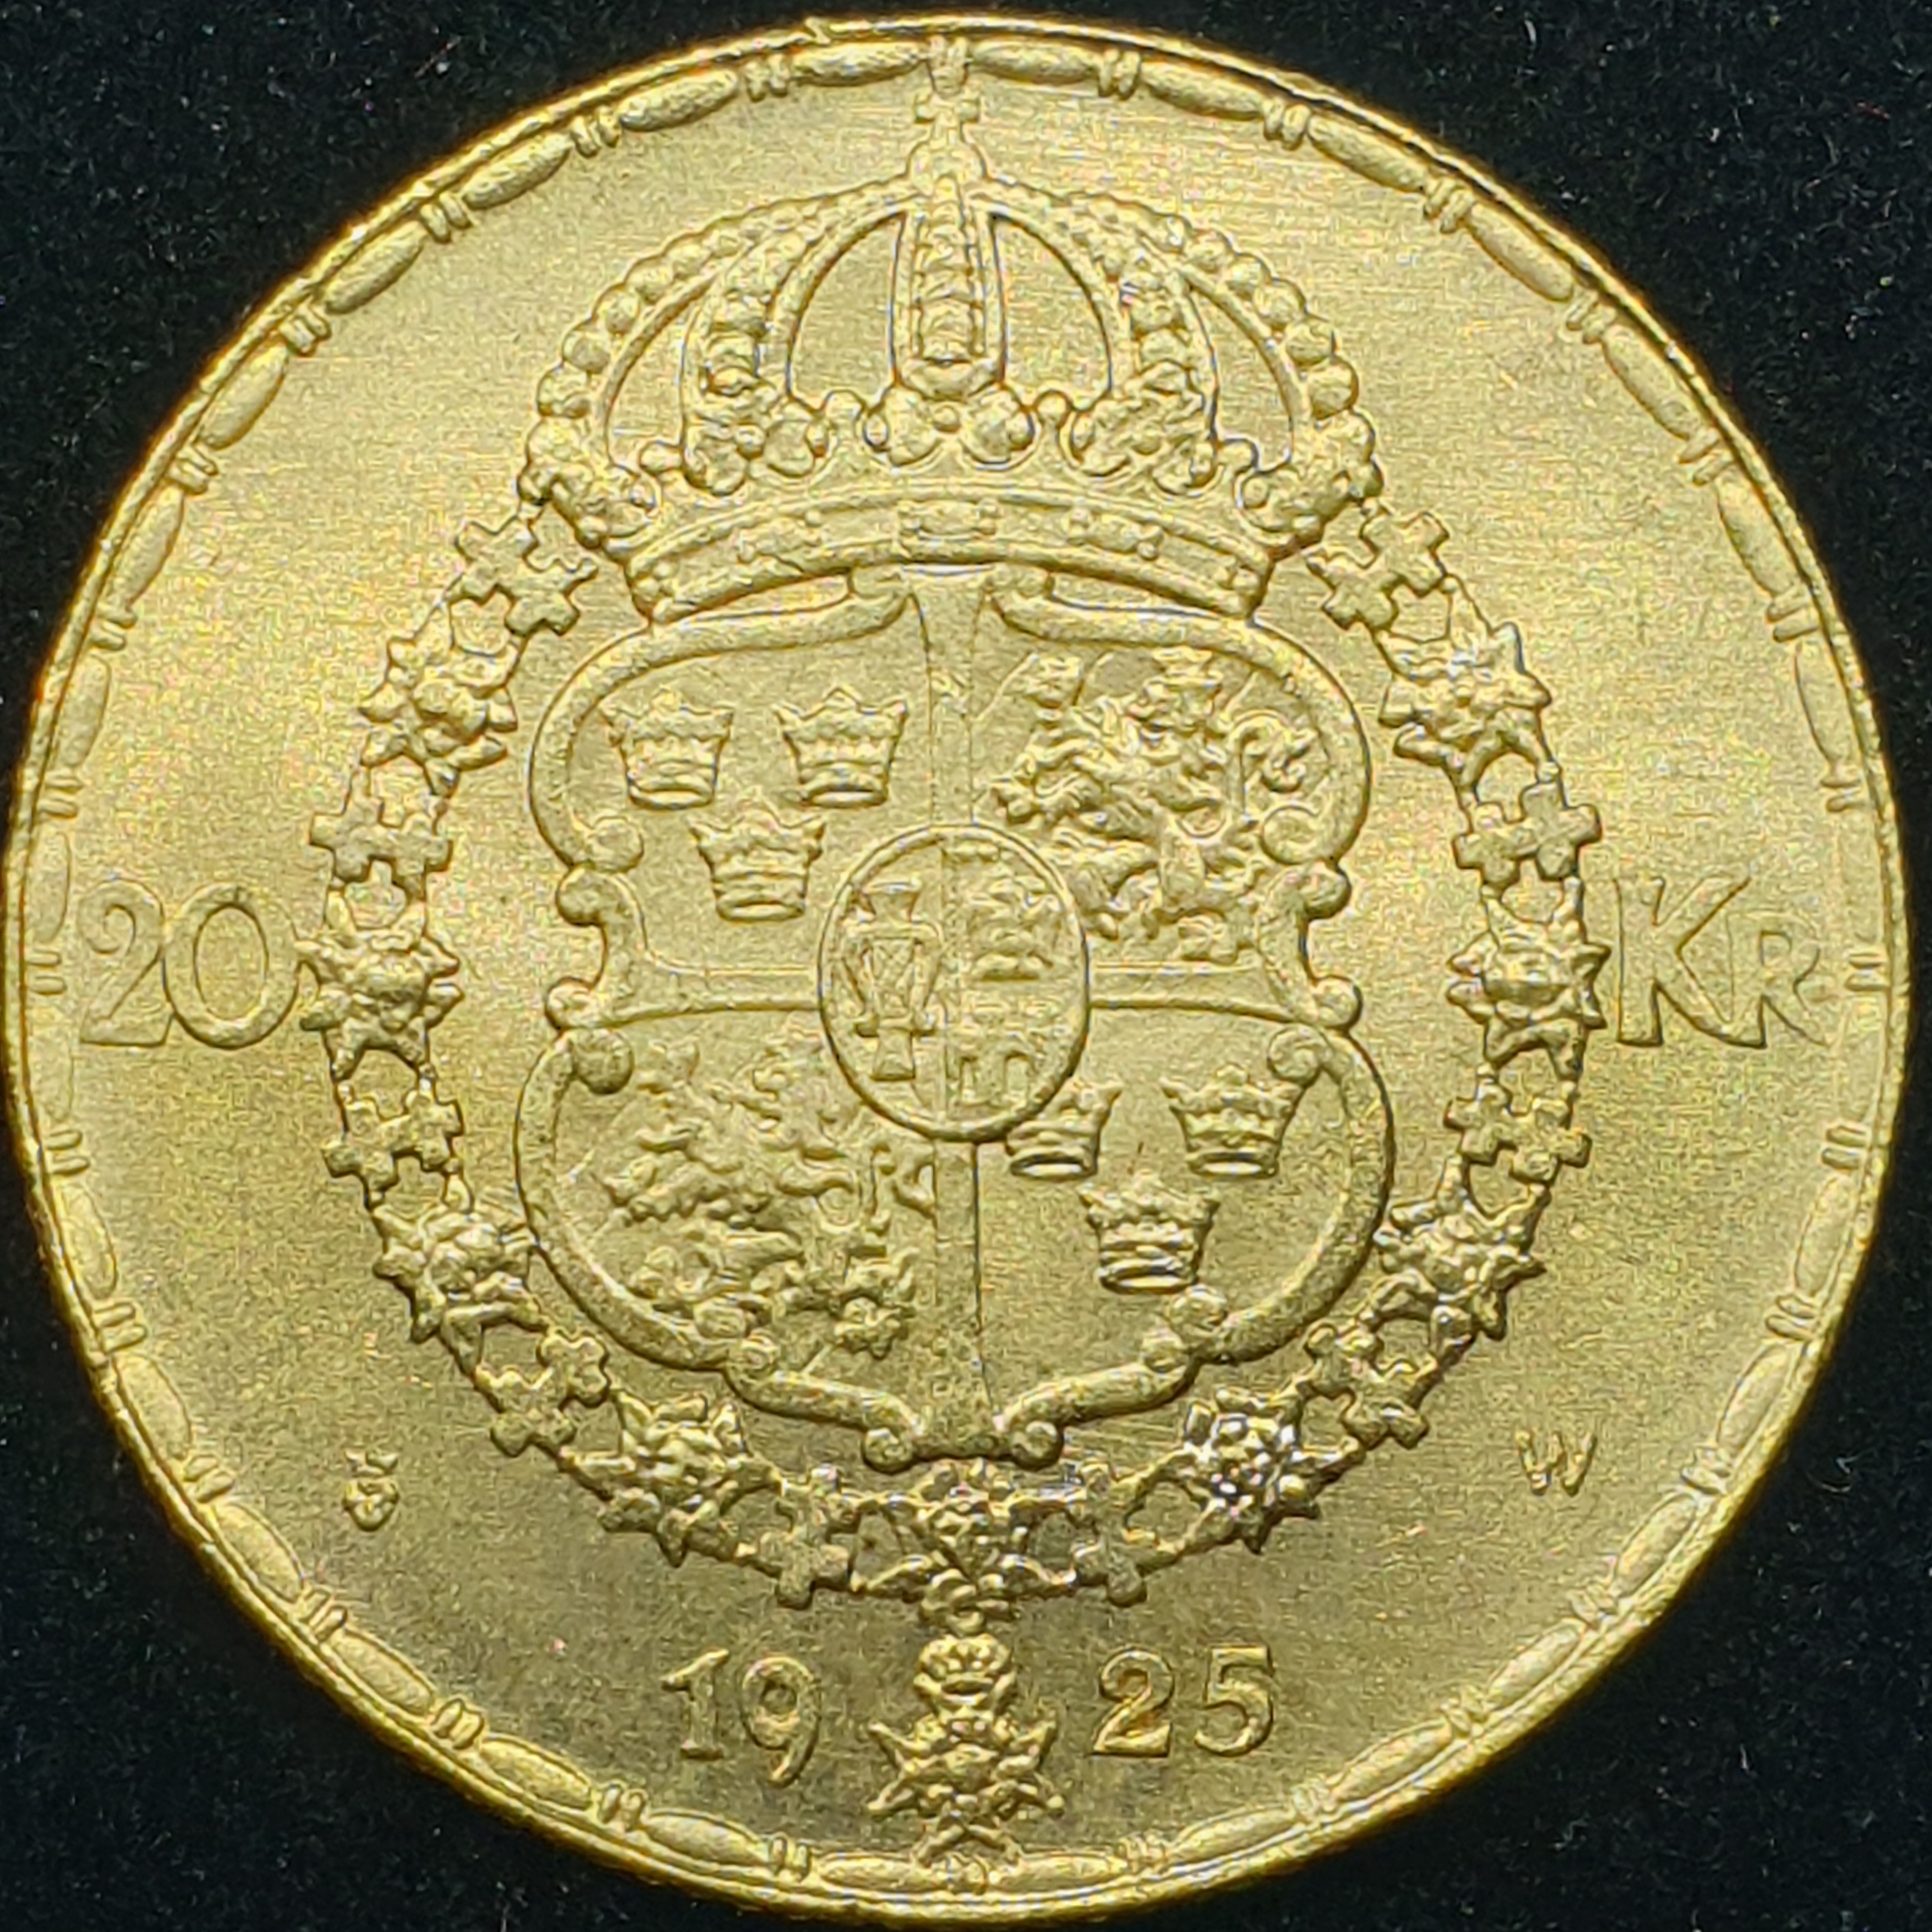 Sweden - 20 Kronor - 1925 - Gustaf V